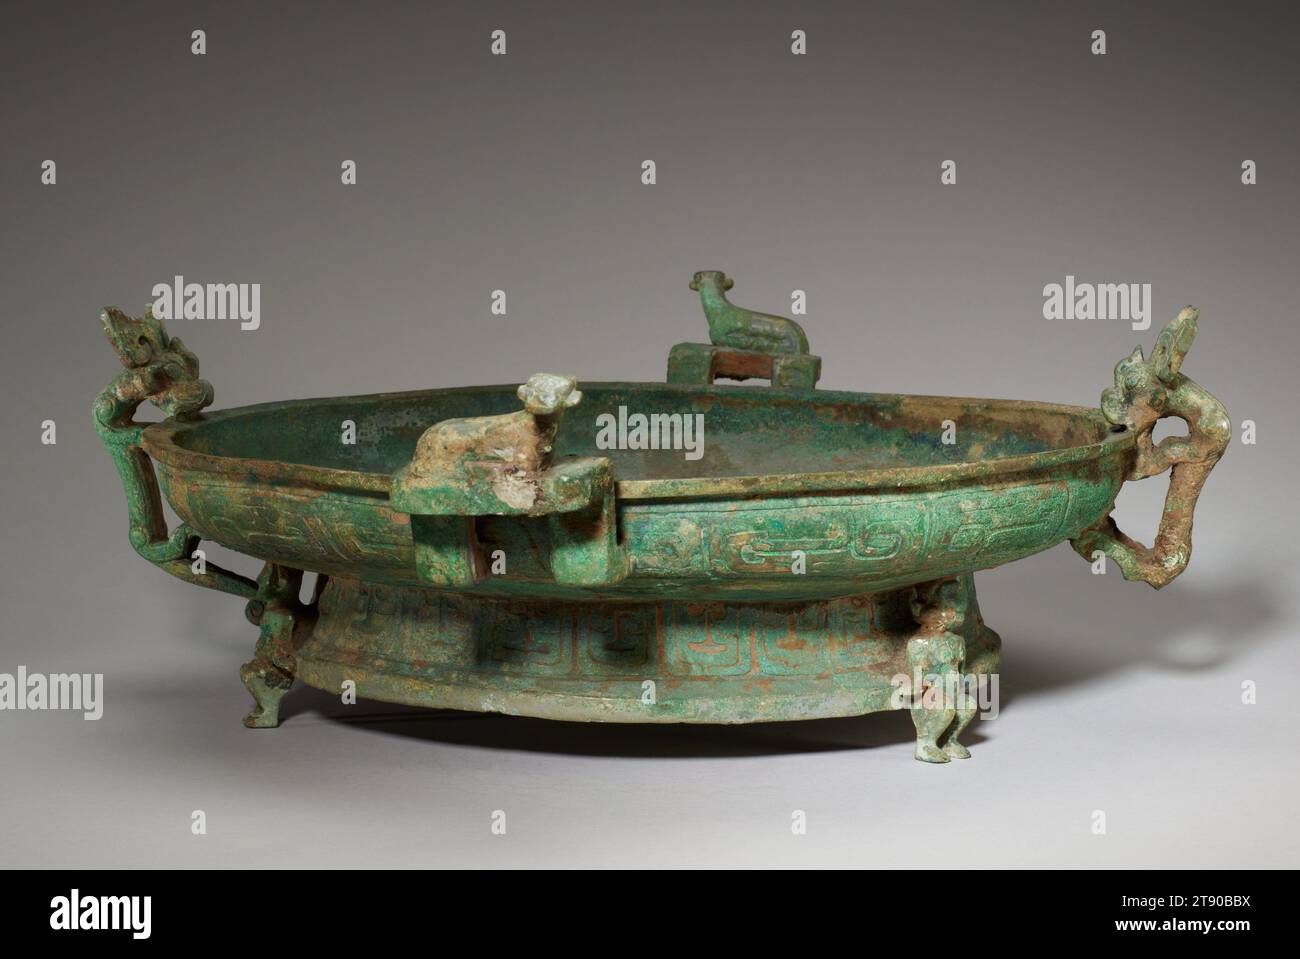 Navire à eau profonde, 9e-8e siècle av. J.-C., 6 3/4 × 19 3/8 × 21 1/4 po., 14,1 lb. (17,15 × 49,21 × 53,98 cm, 6,4 kg), Bronze, Chine, 9e-8e siècle av. J.-C., le bassin pan a commencé à apparaître au début de la dynastie Shang (c. 1600–1300 av. J.-C.) et est devenu répandu au cours de la dynastie Shang postérieure et de la dynastie Zhou suivante (c. 1300–256 av. J.-C.). La casserole a souvent été trouvée couplée avec yi, un récipient utilisé pour verser l'eau. De tels appariements peuvent avoir lieu non seulement dans les sépultures, mais aussi dans les cérémonies rituelles dans les temples ancestraux. Malgré le fait qu'il a le large bol peu profond et le pied profond typique de la casserole Banque D'Images